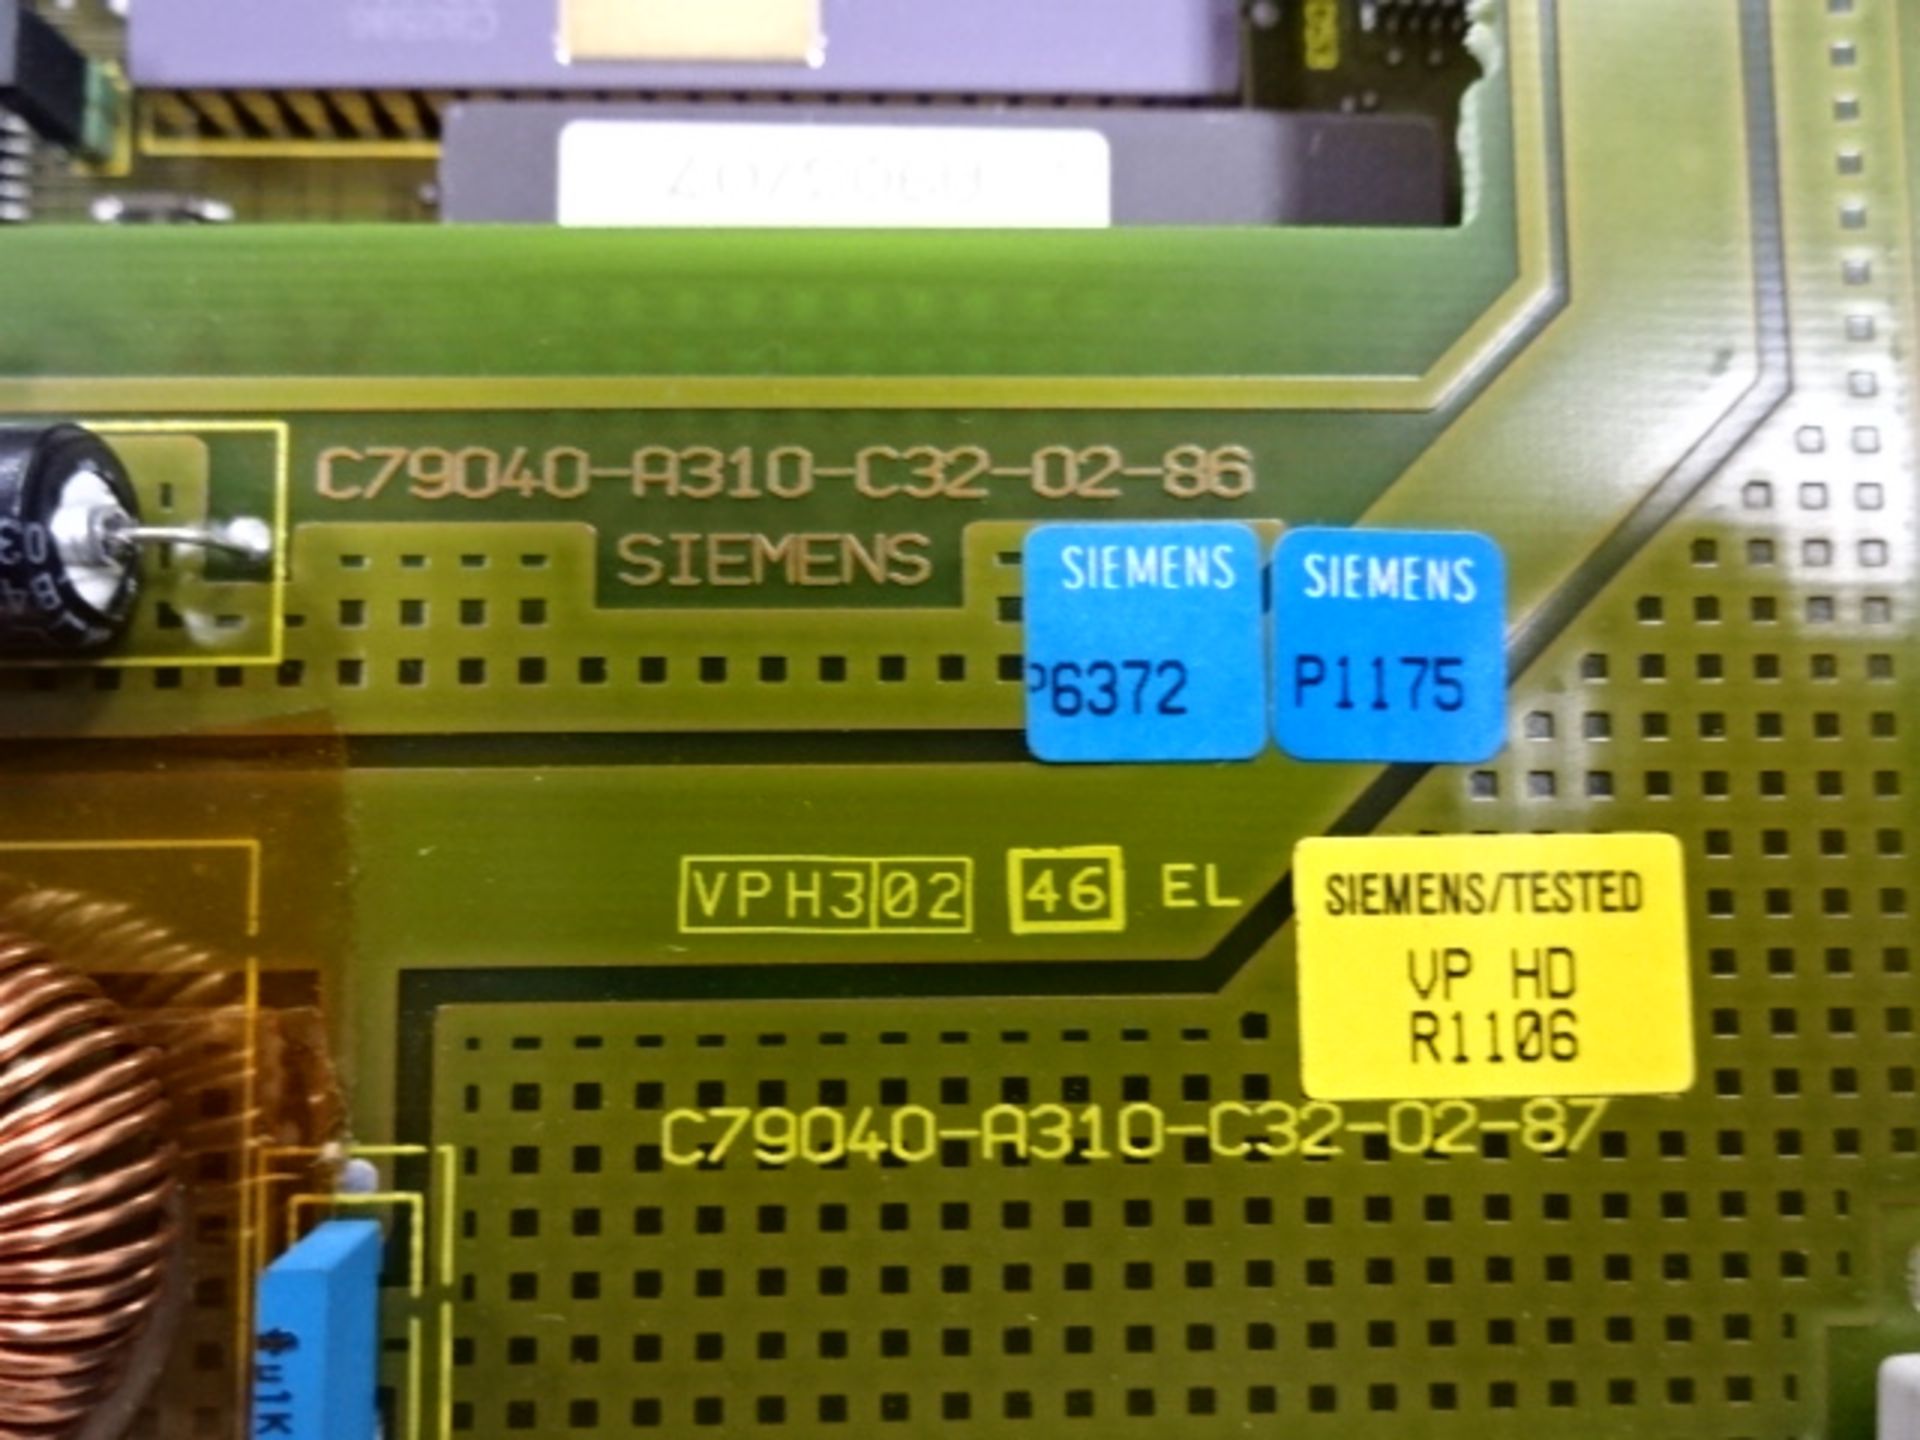 Composant Électronique - Electronic Component - Image 4 of 4